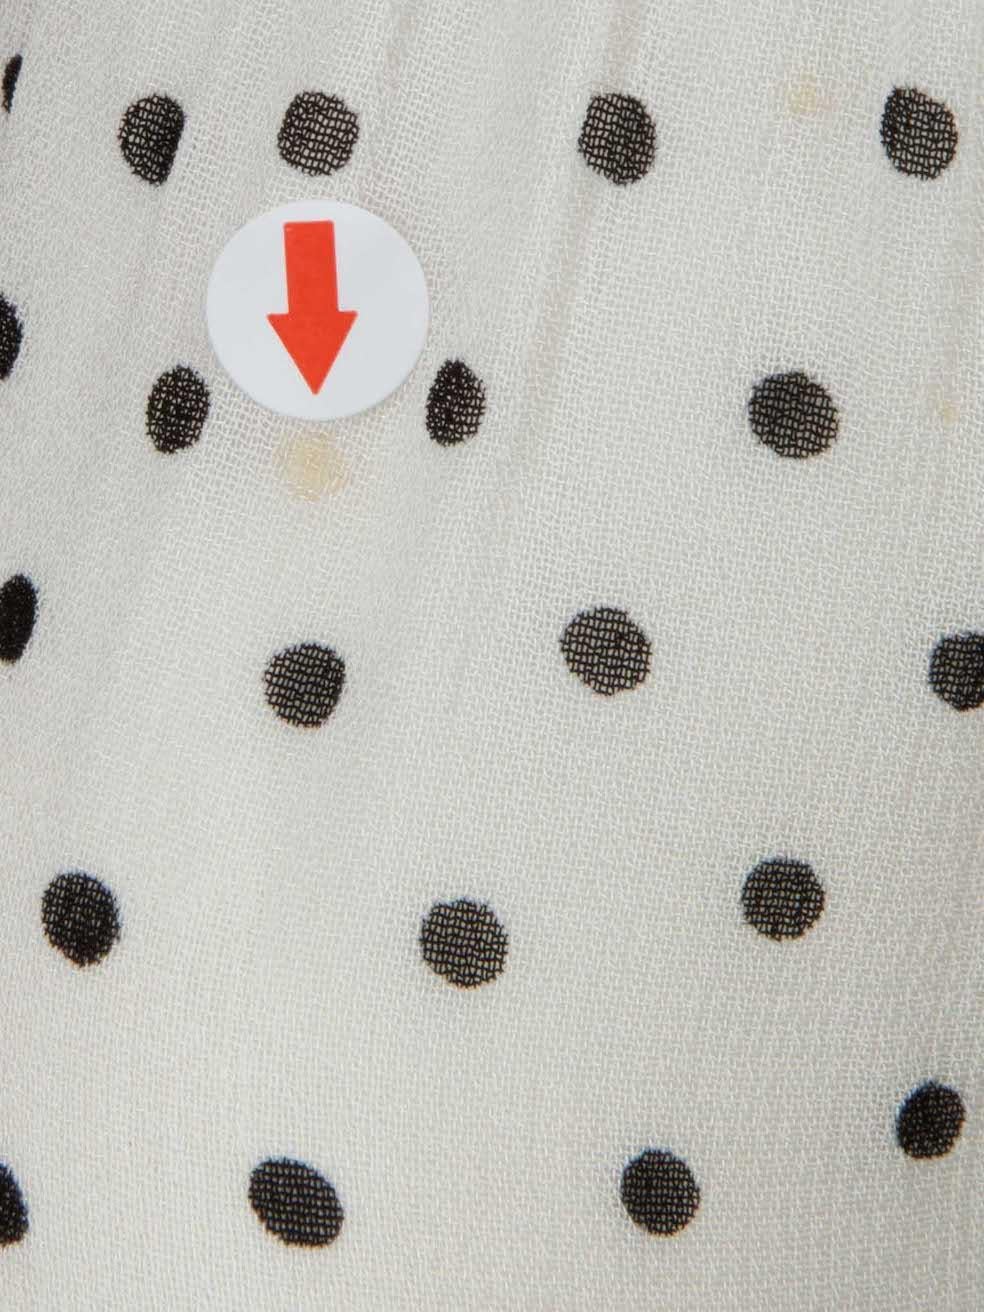 Ganni White Polka Dot Maxi Dress Size M 2